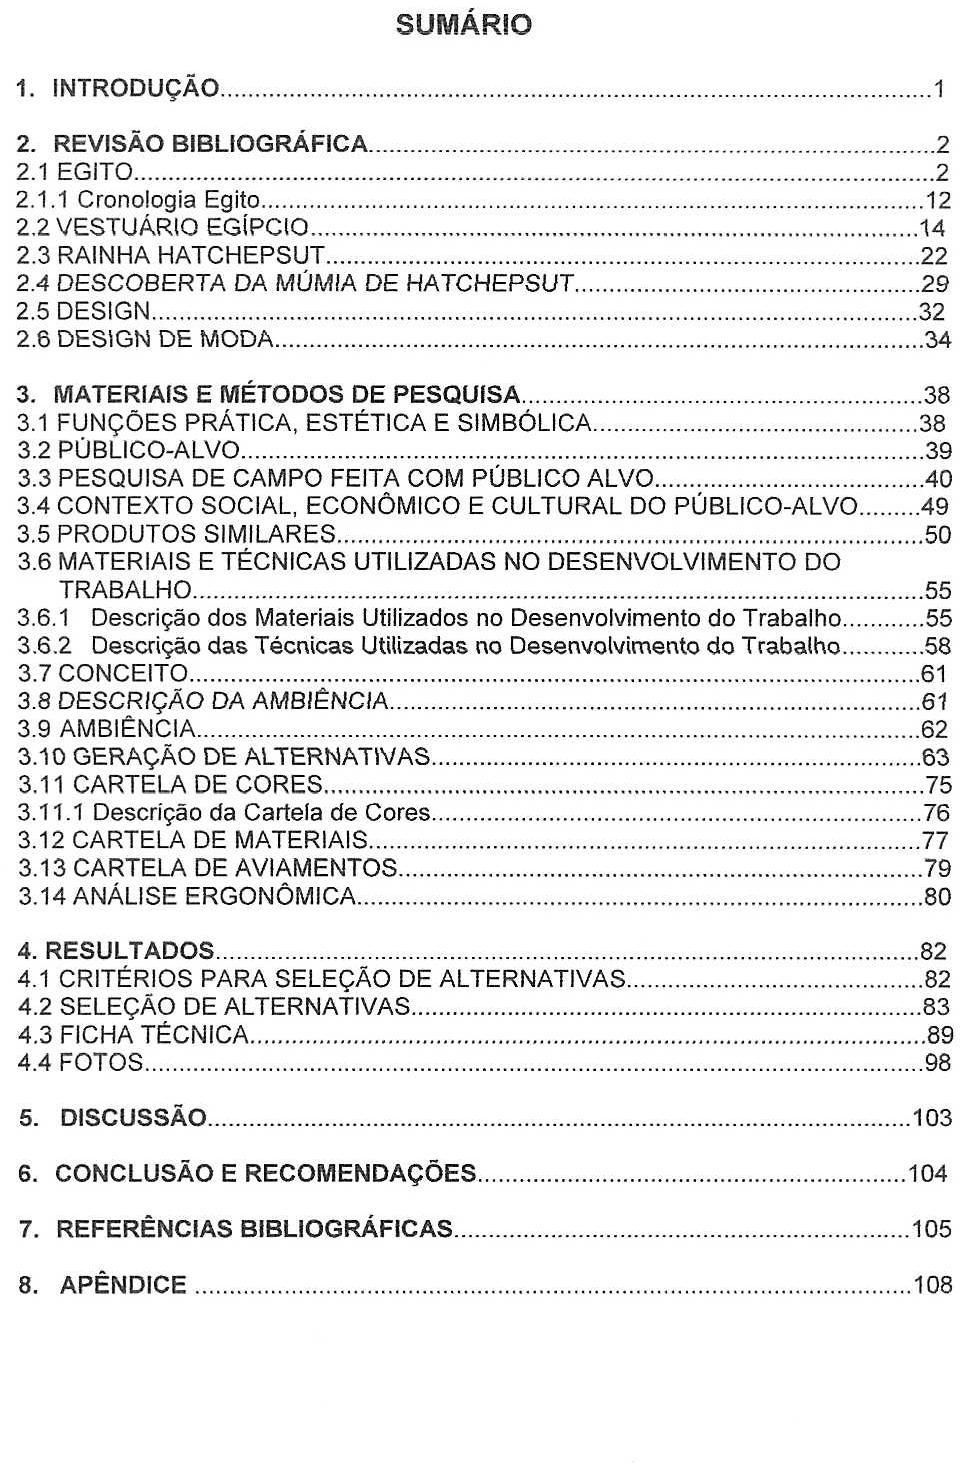 3 PESQUISA DE CAMPO FEITA COM PUBLICO ALVO 40 34 CONTEXTO SOCIAL, ECONOMICO E CULTURAL DO PUBLICO-ALVO..49 3.5 PRODUTOS SIMILARES......50 3.